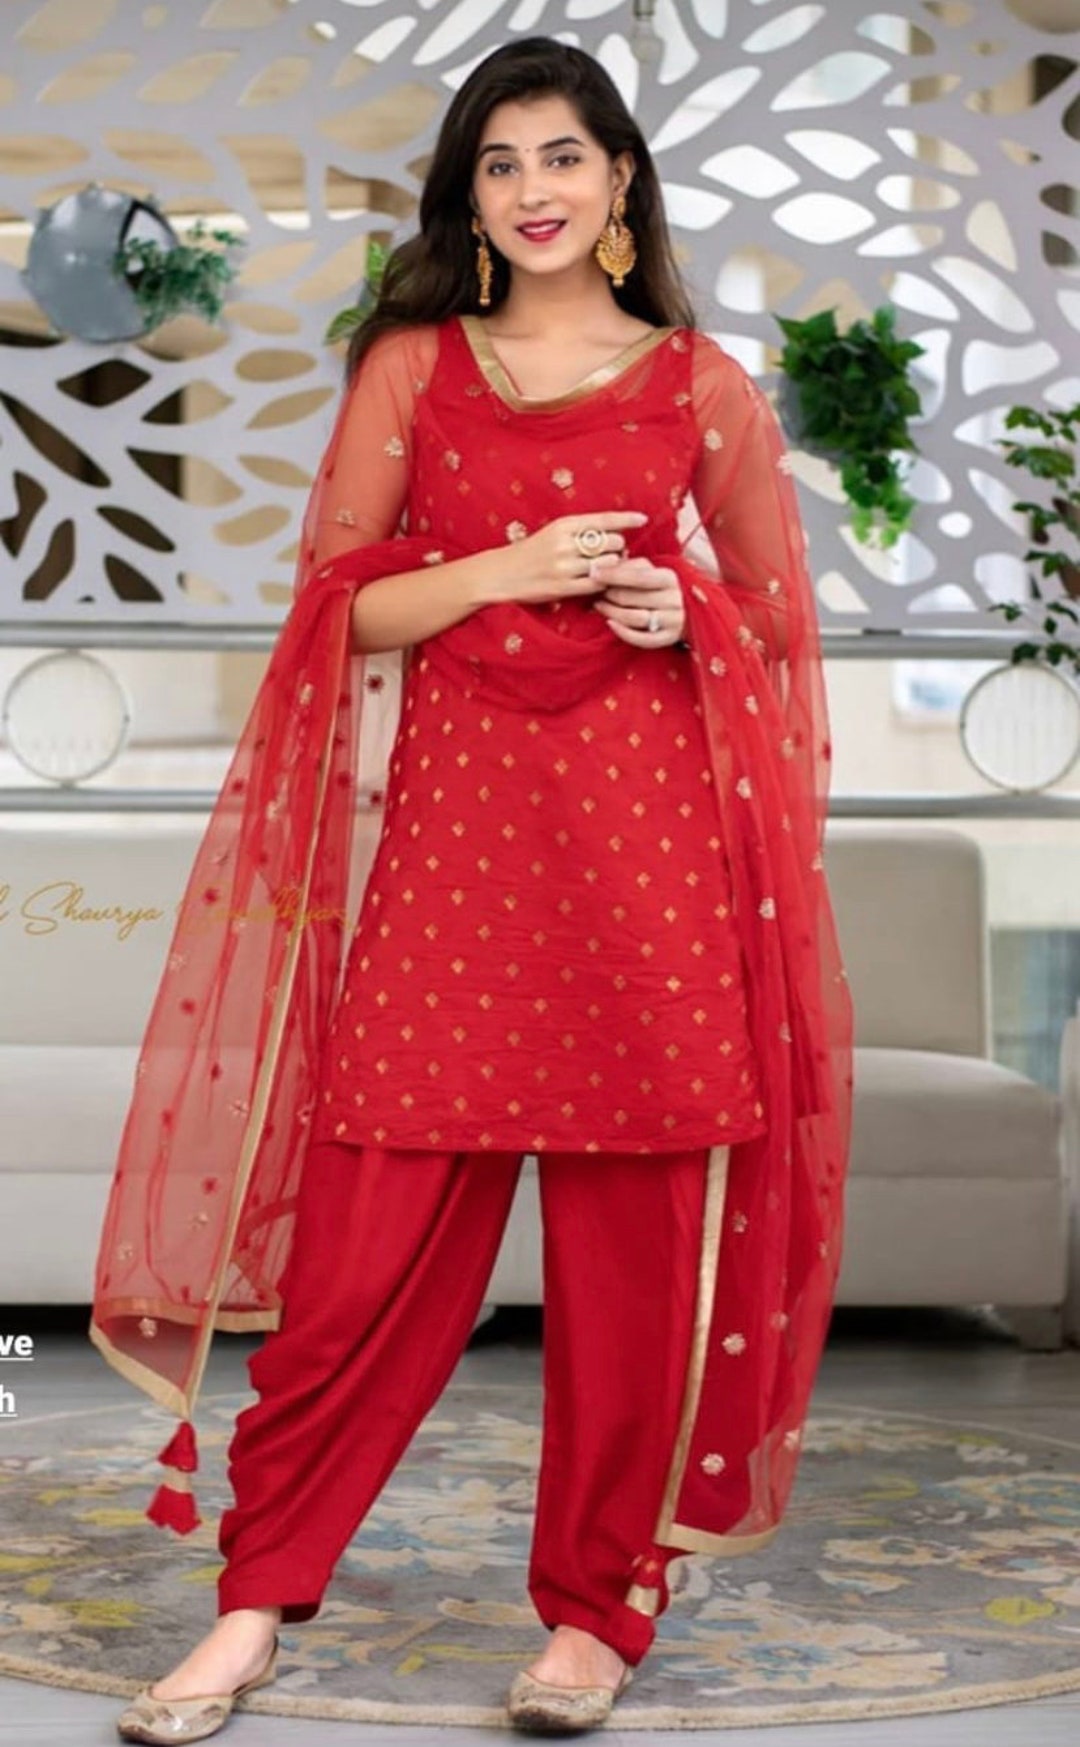 Patiala Suit For Wedding | Patiala Suit For Wedding Online